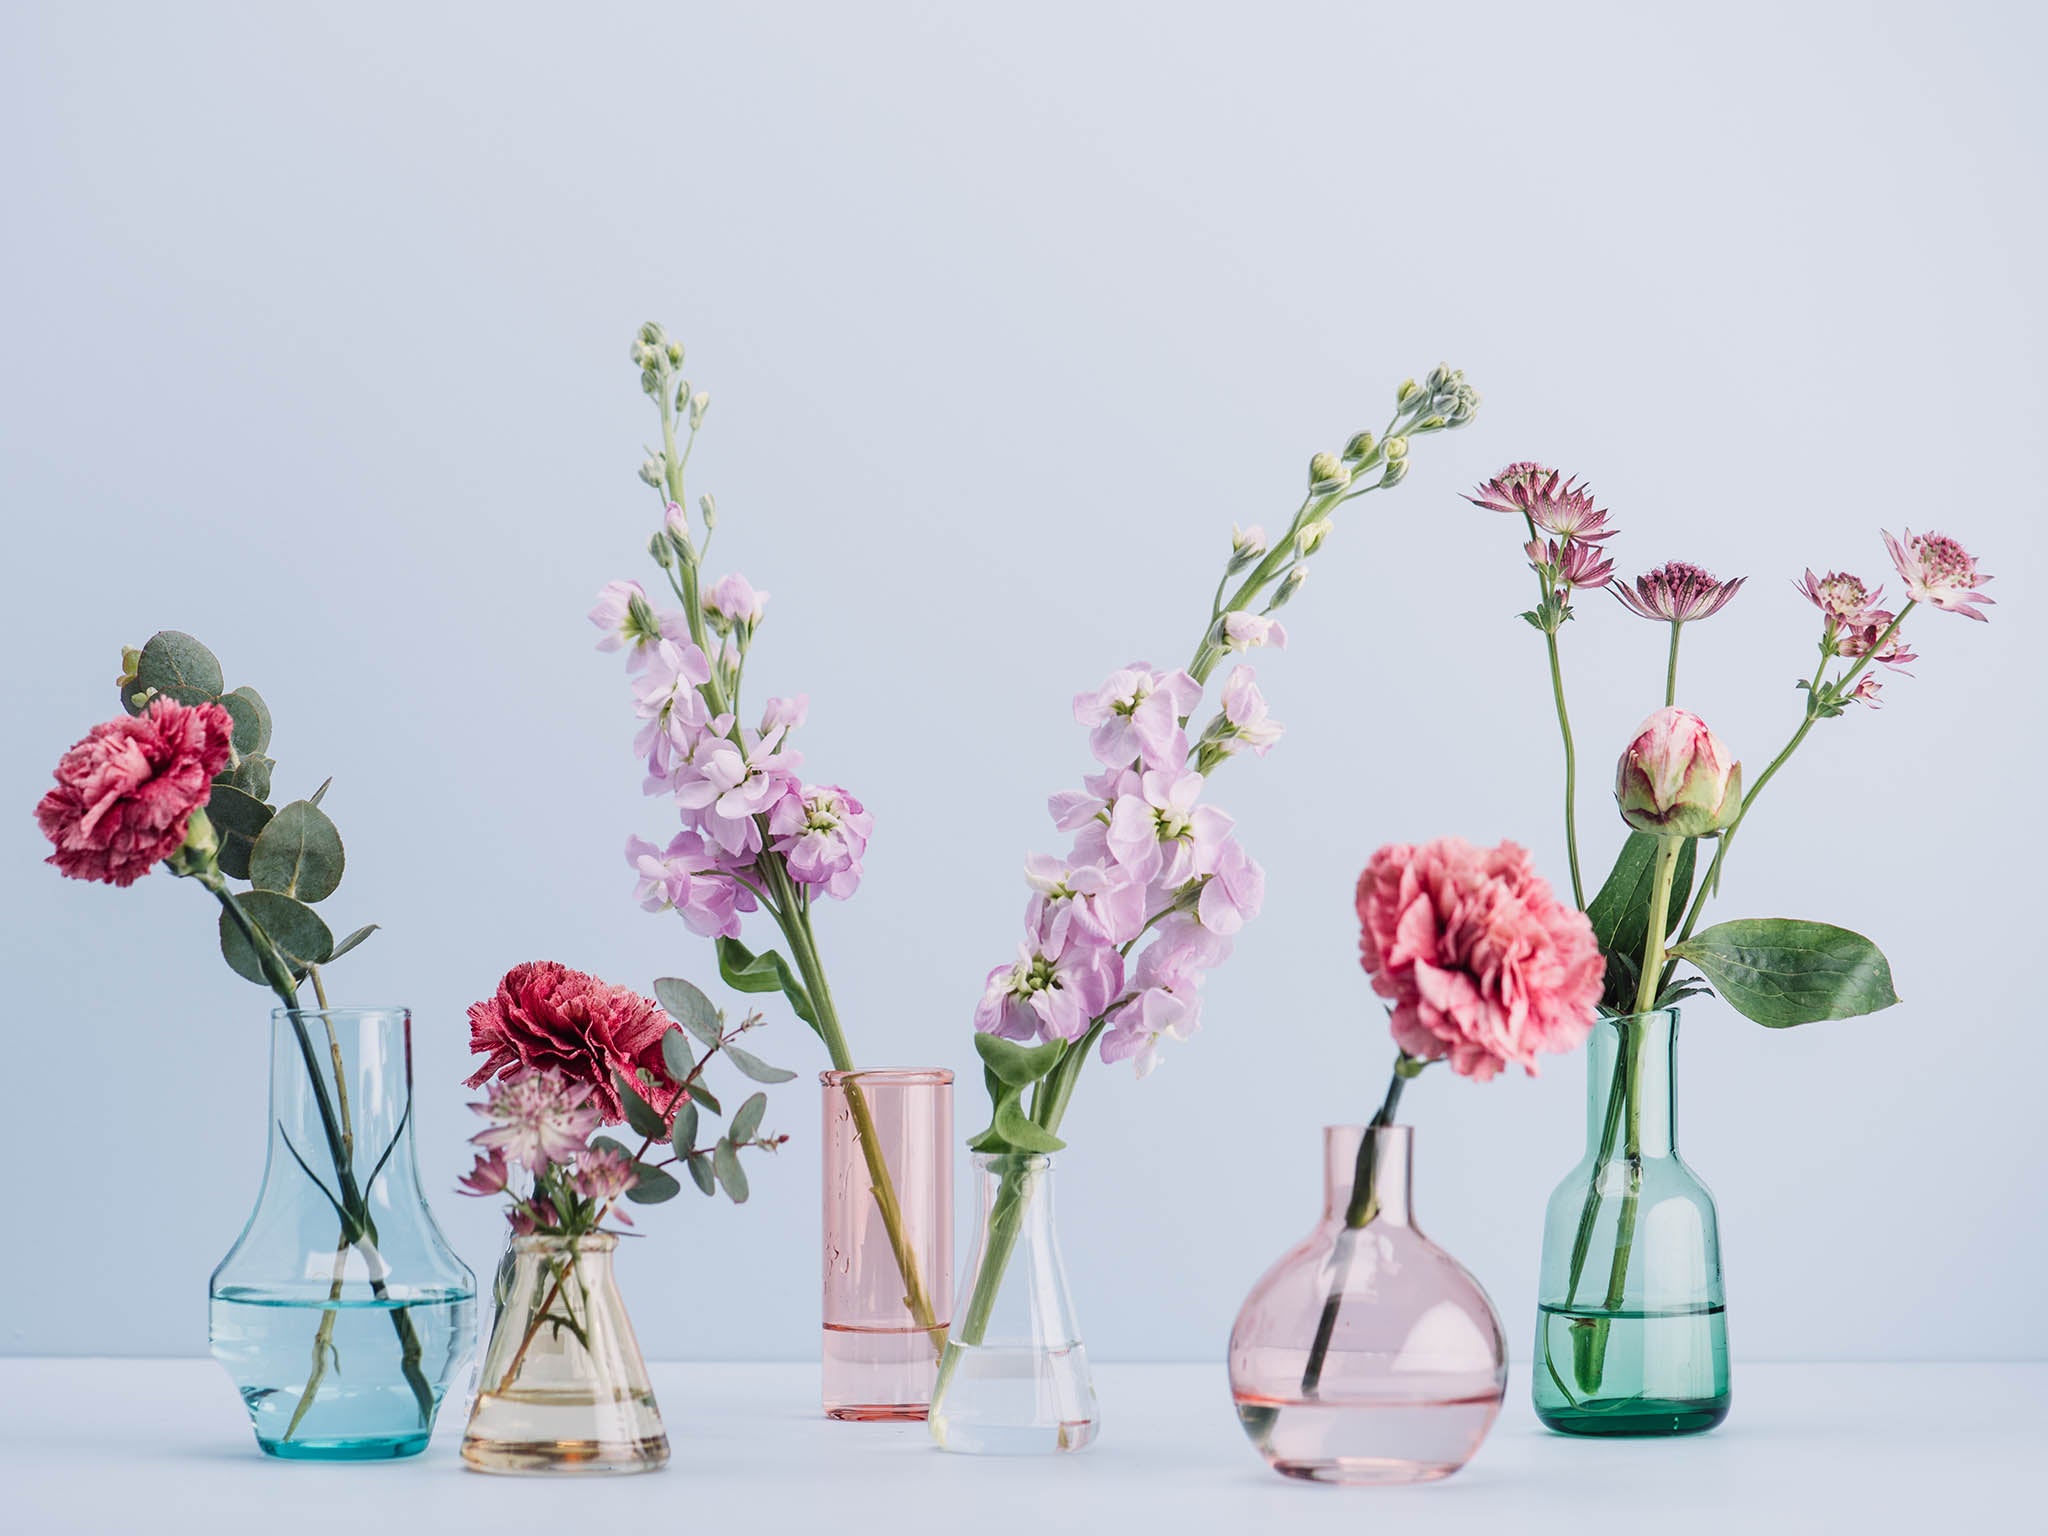 vases flowers istock